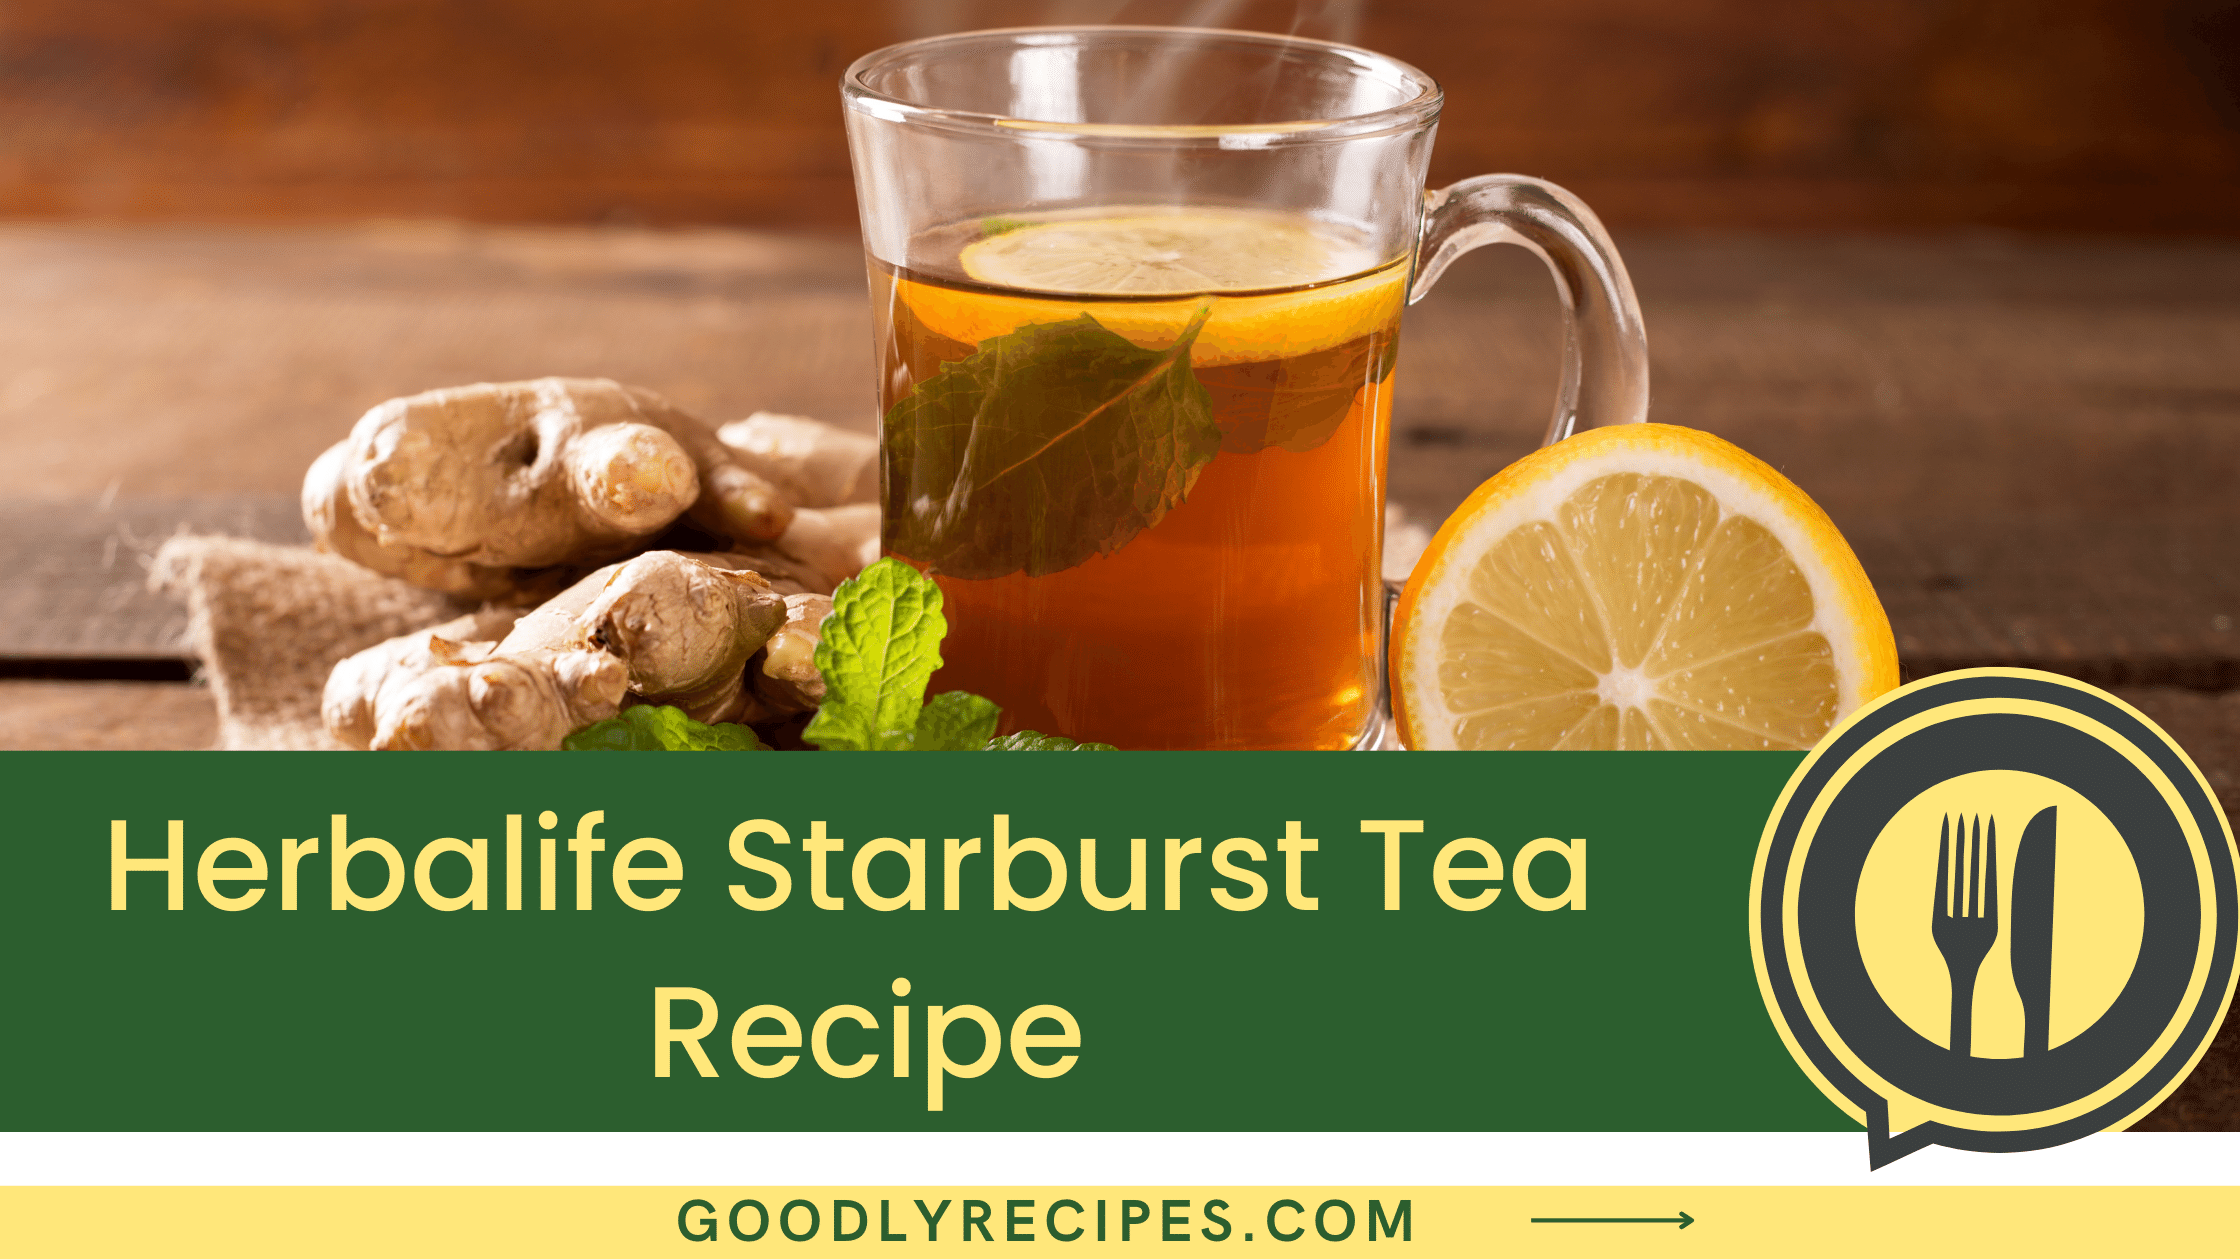 What is Herbalife Starburst Tea?